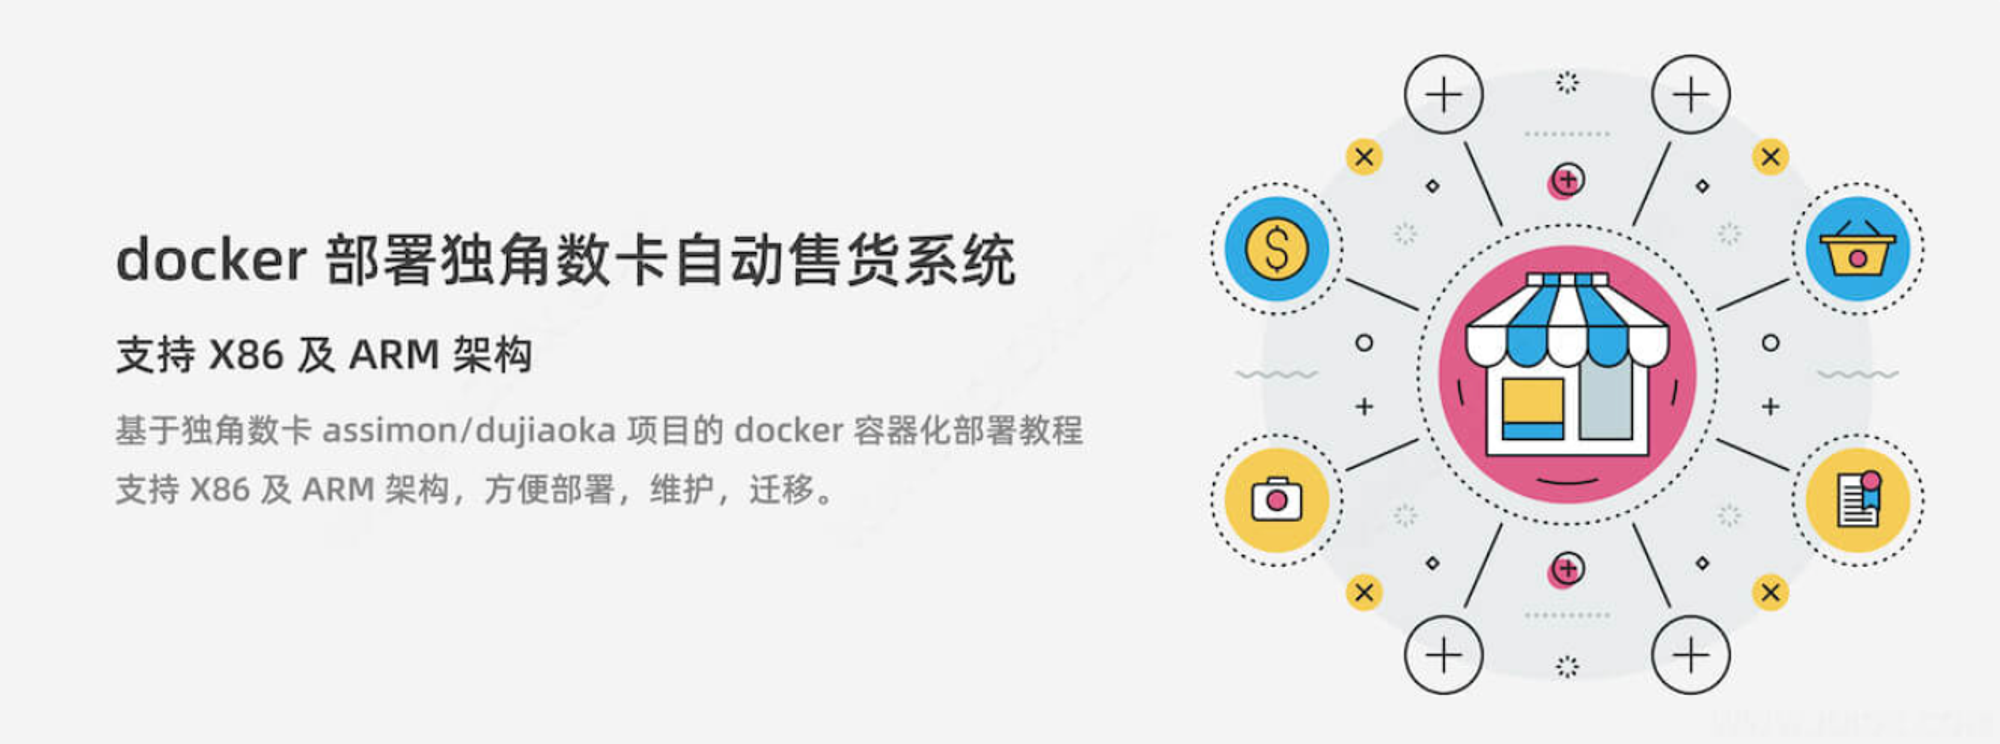 【转载】docker 部署 dujiaoka 独角数卡自动售货系统 支持 X86 和 ARM 架构